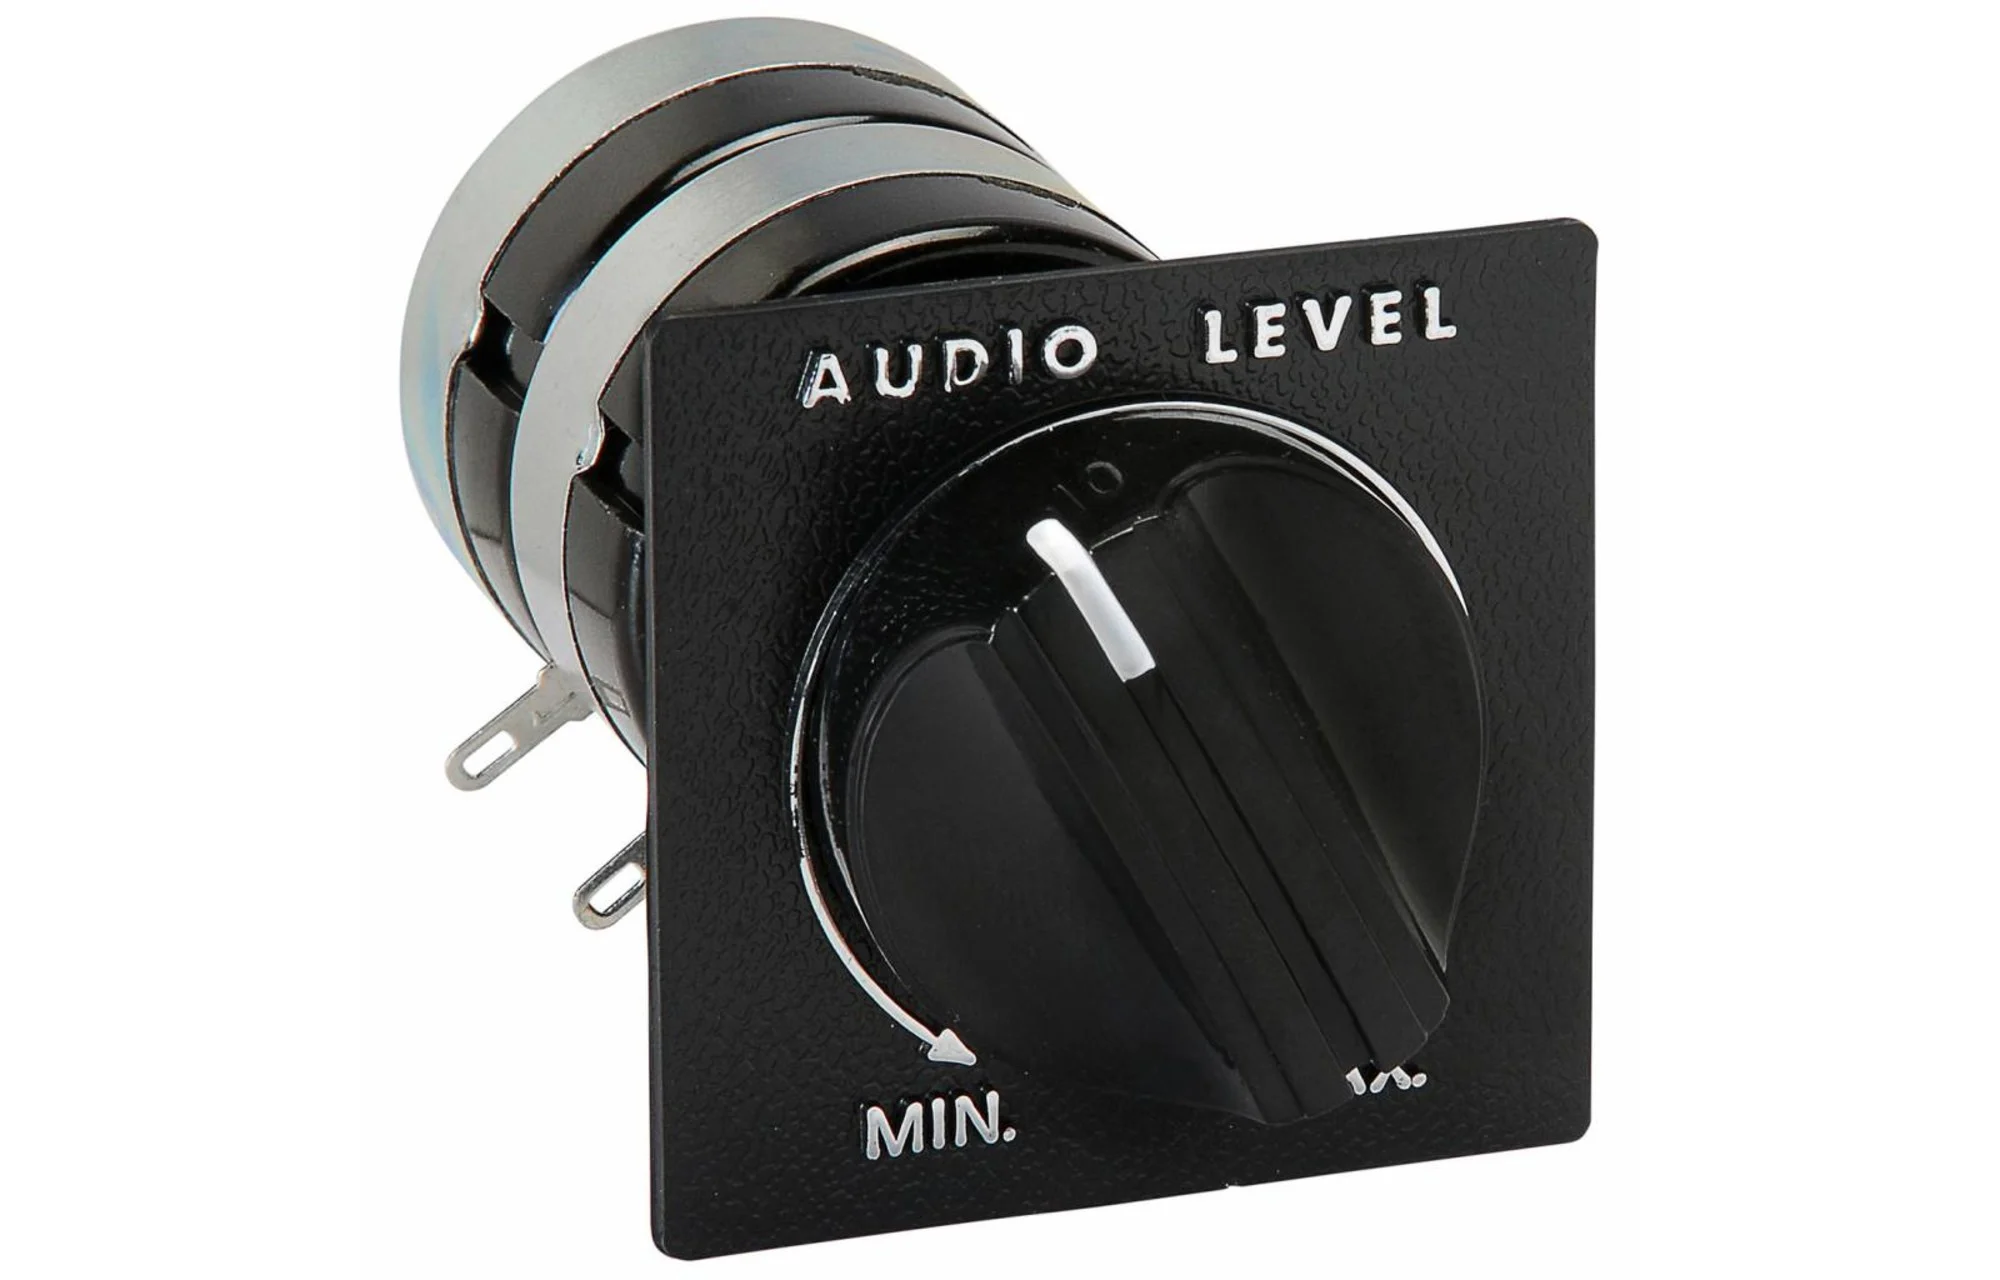 Atenuatoare Lpad - Atenuator L-Pad 1 inch 8 Ohm 15 W Stereo, audioclub.ro